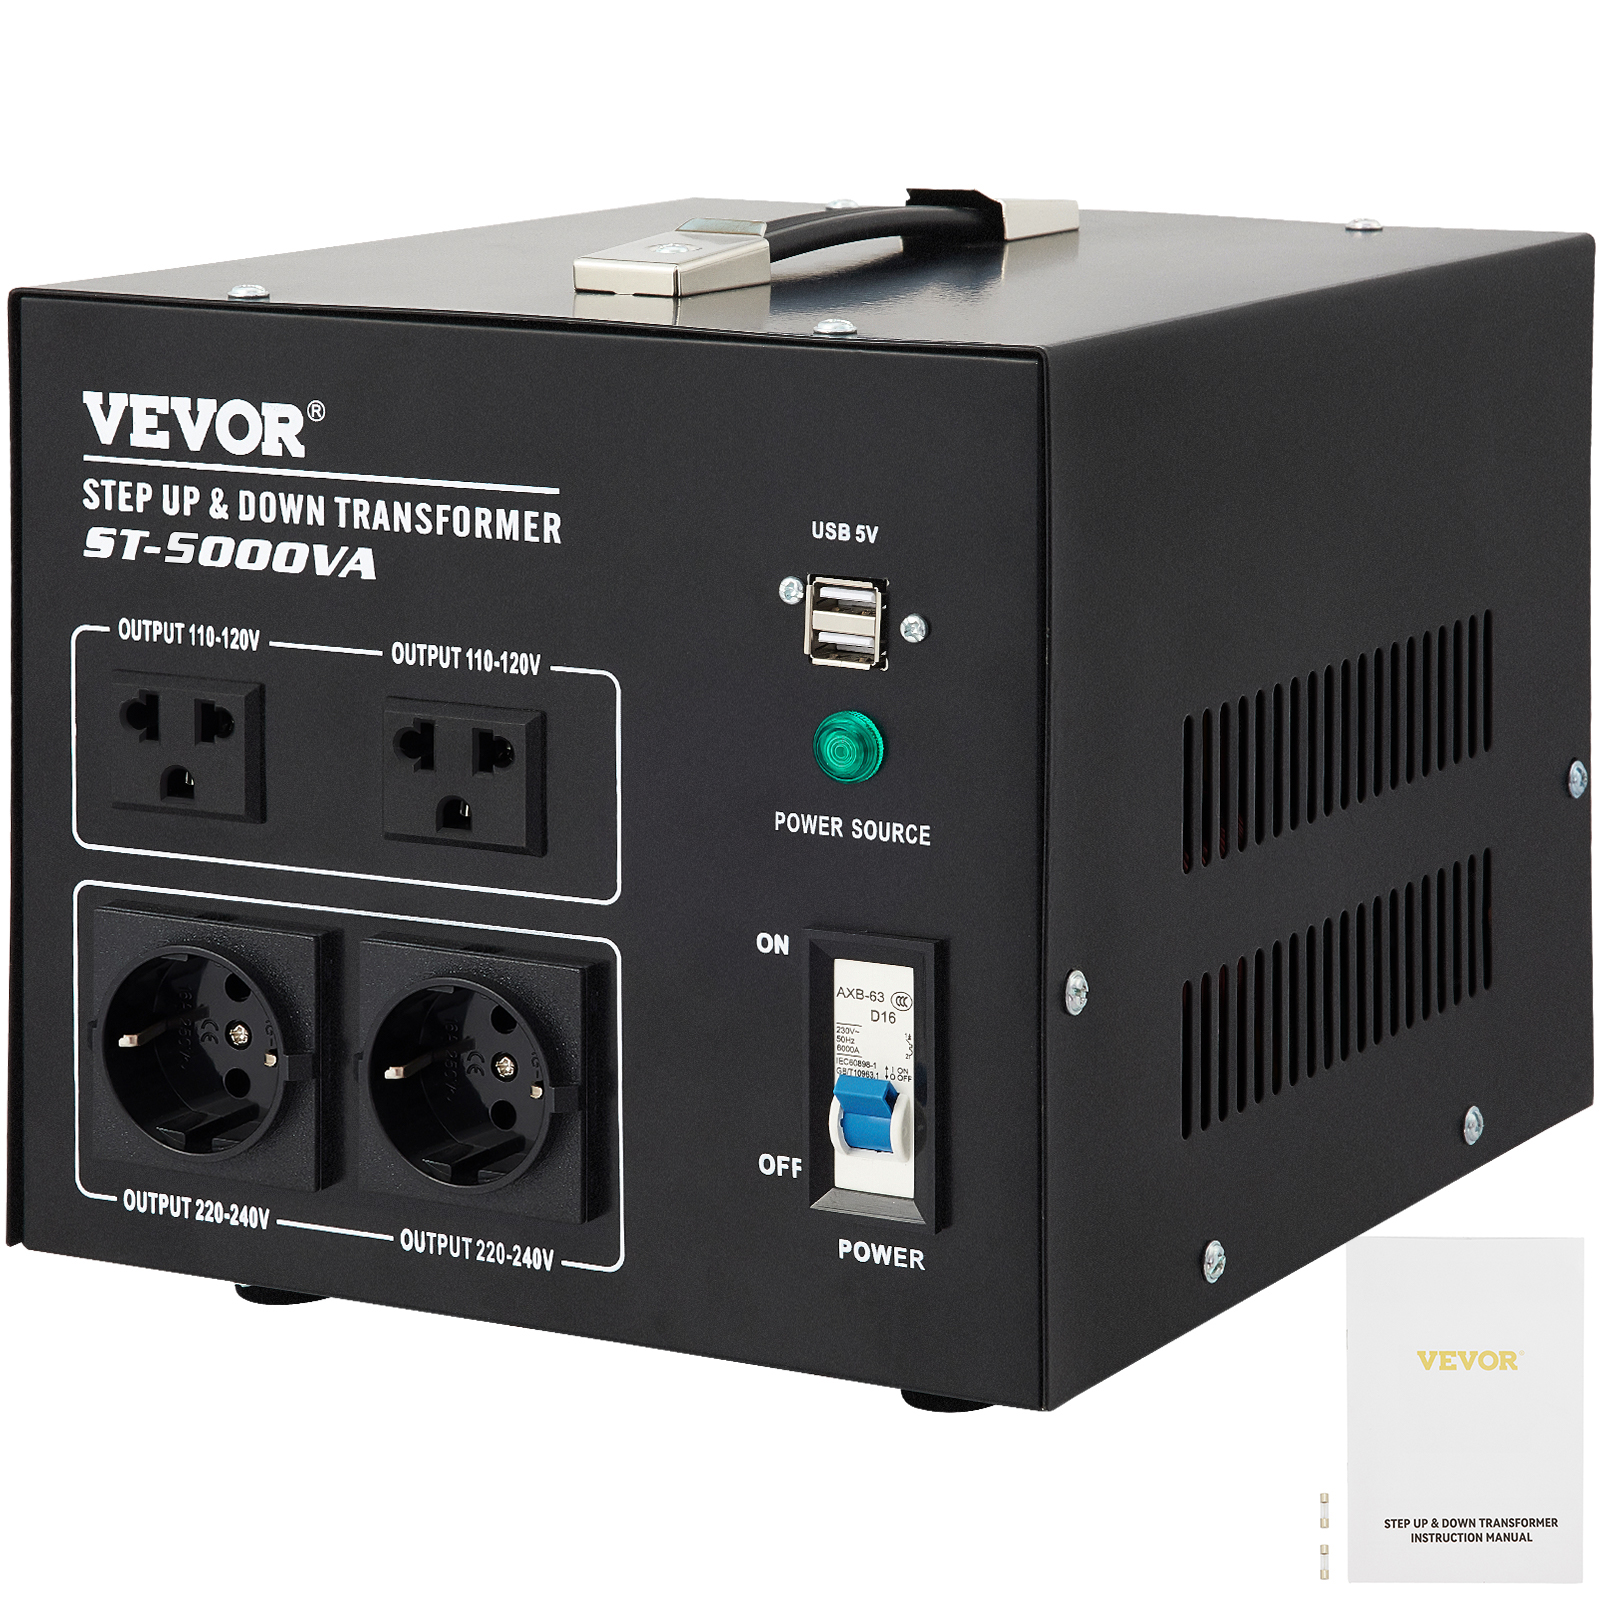 VEVOR Voltage Converter Transformer,5000W Heavy Duty Step Up/Down Transformer Converter(240V to 110V, 110V to 240V),2 US&1 UK&1 Outlet Circuit Break Protection,5V USB Port,CE Certified | VEVOR US